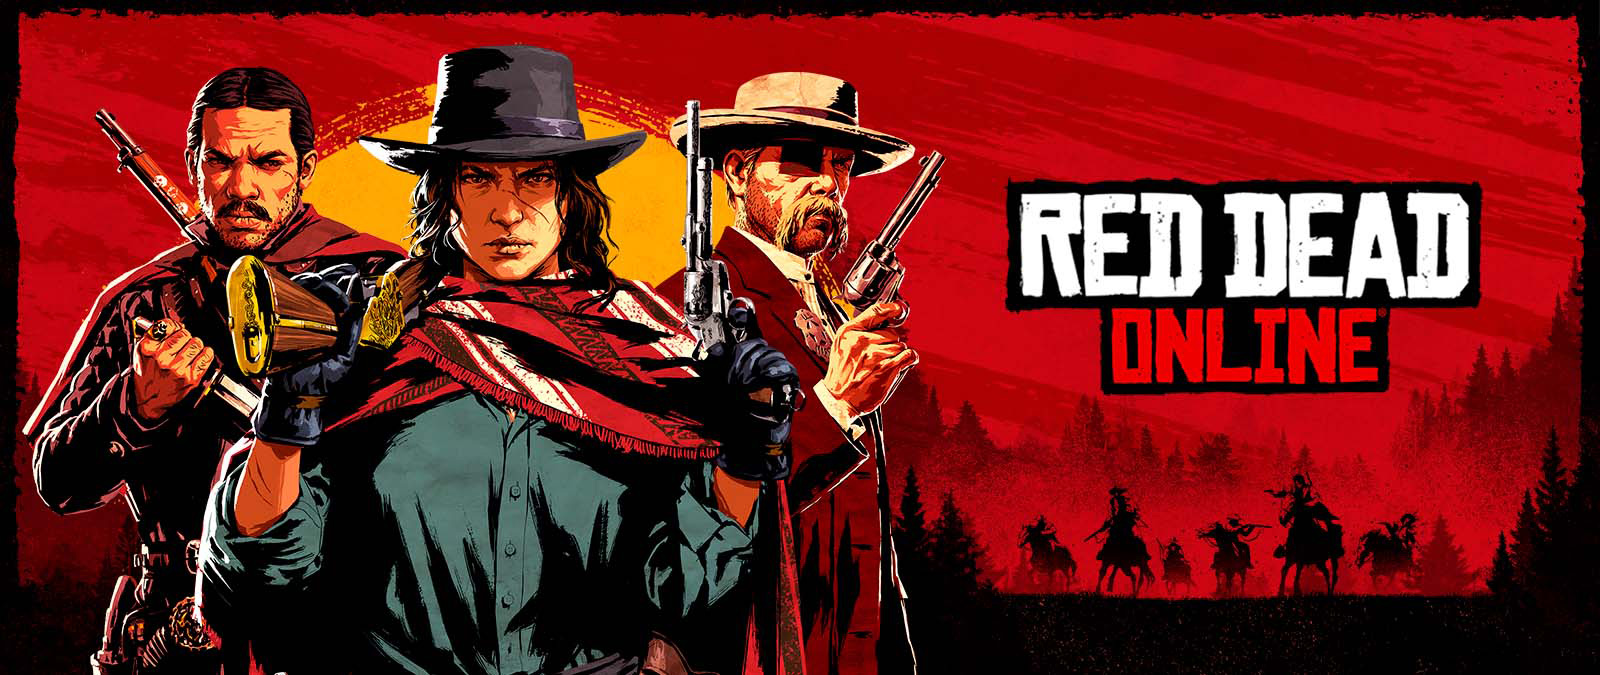 Red Dead Online. Tre karakterer holder våpen foran en solnedgang og skygger av andre karakterer på hester.